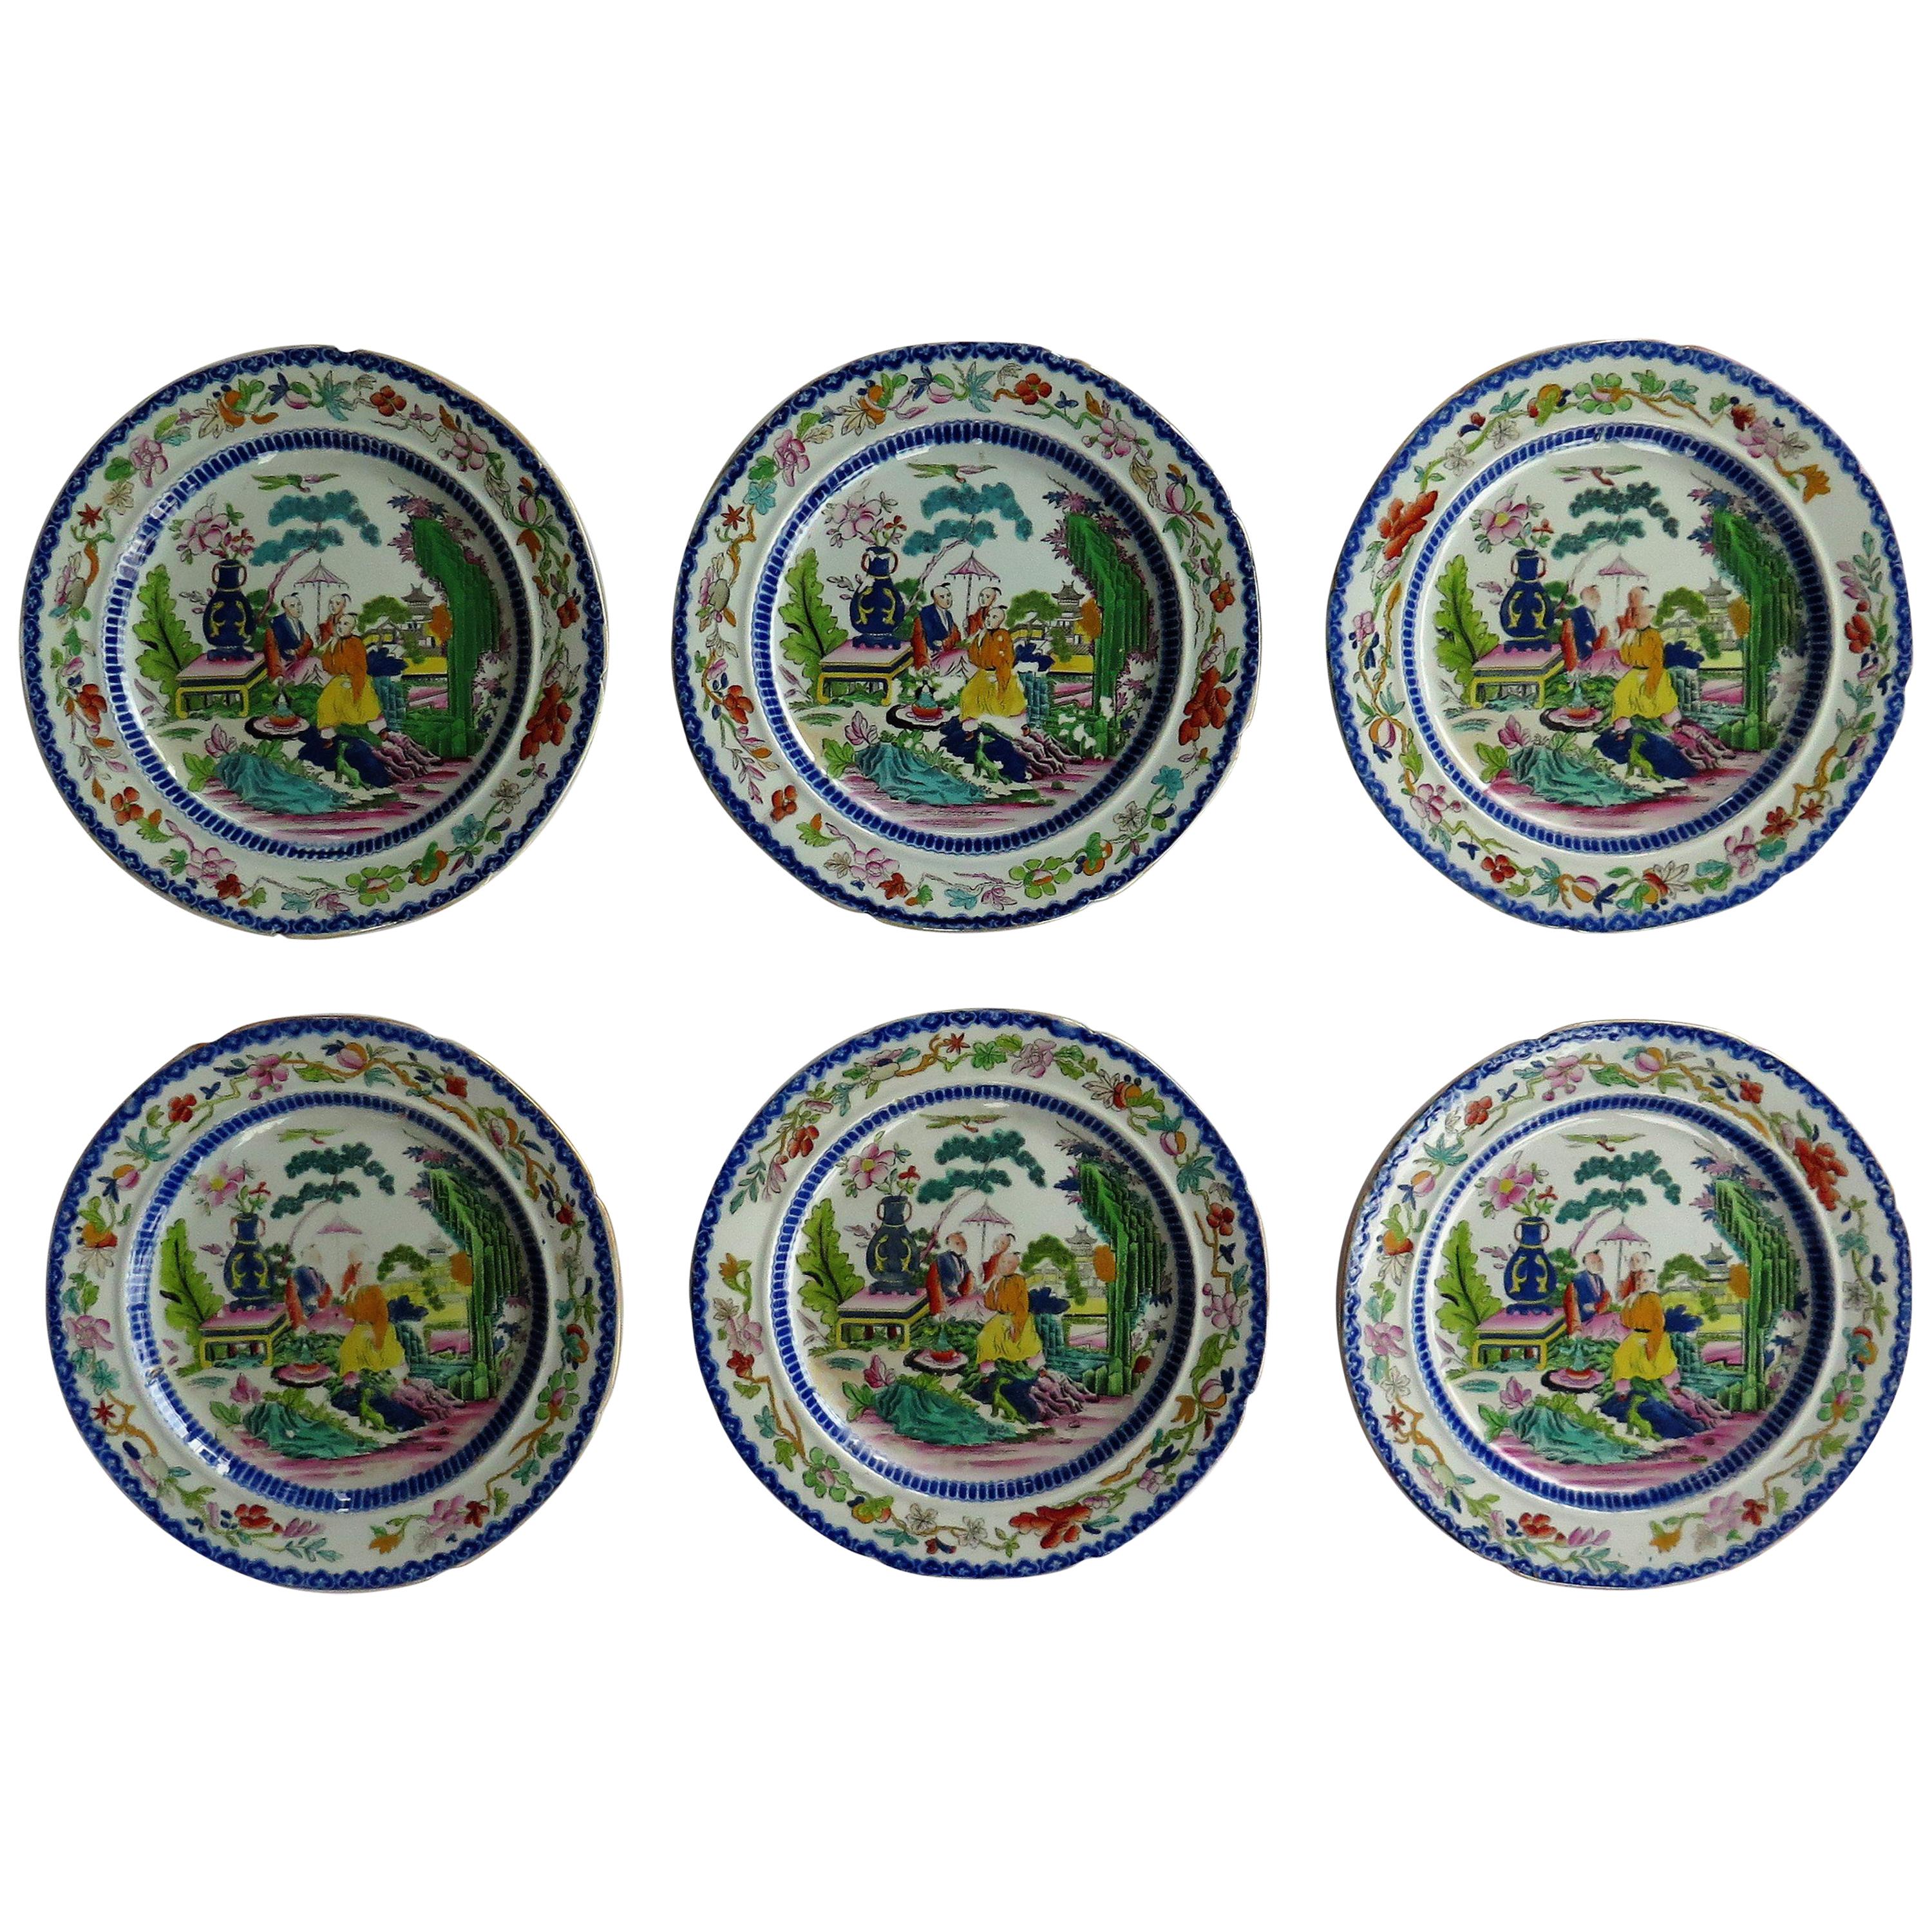 Set of Six Early Mason's Ironstone Plates in the Mogul Pattern, circa 1815